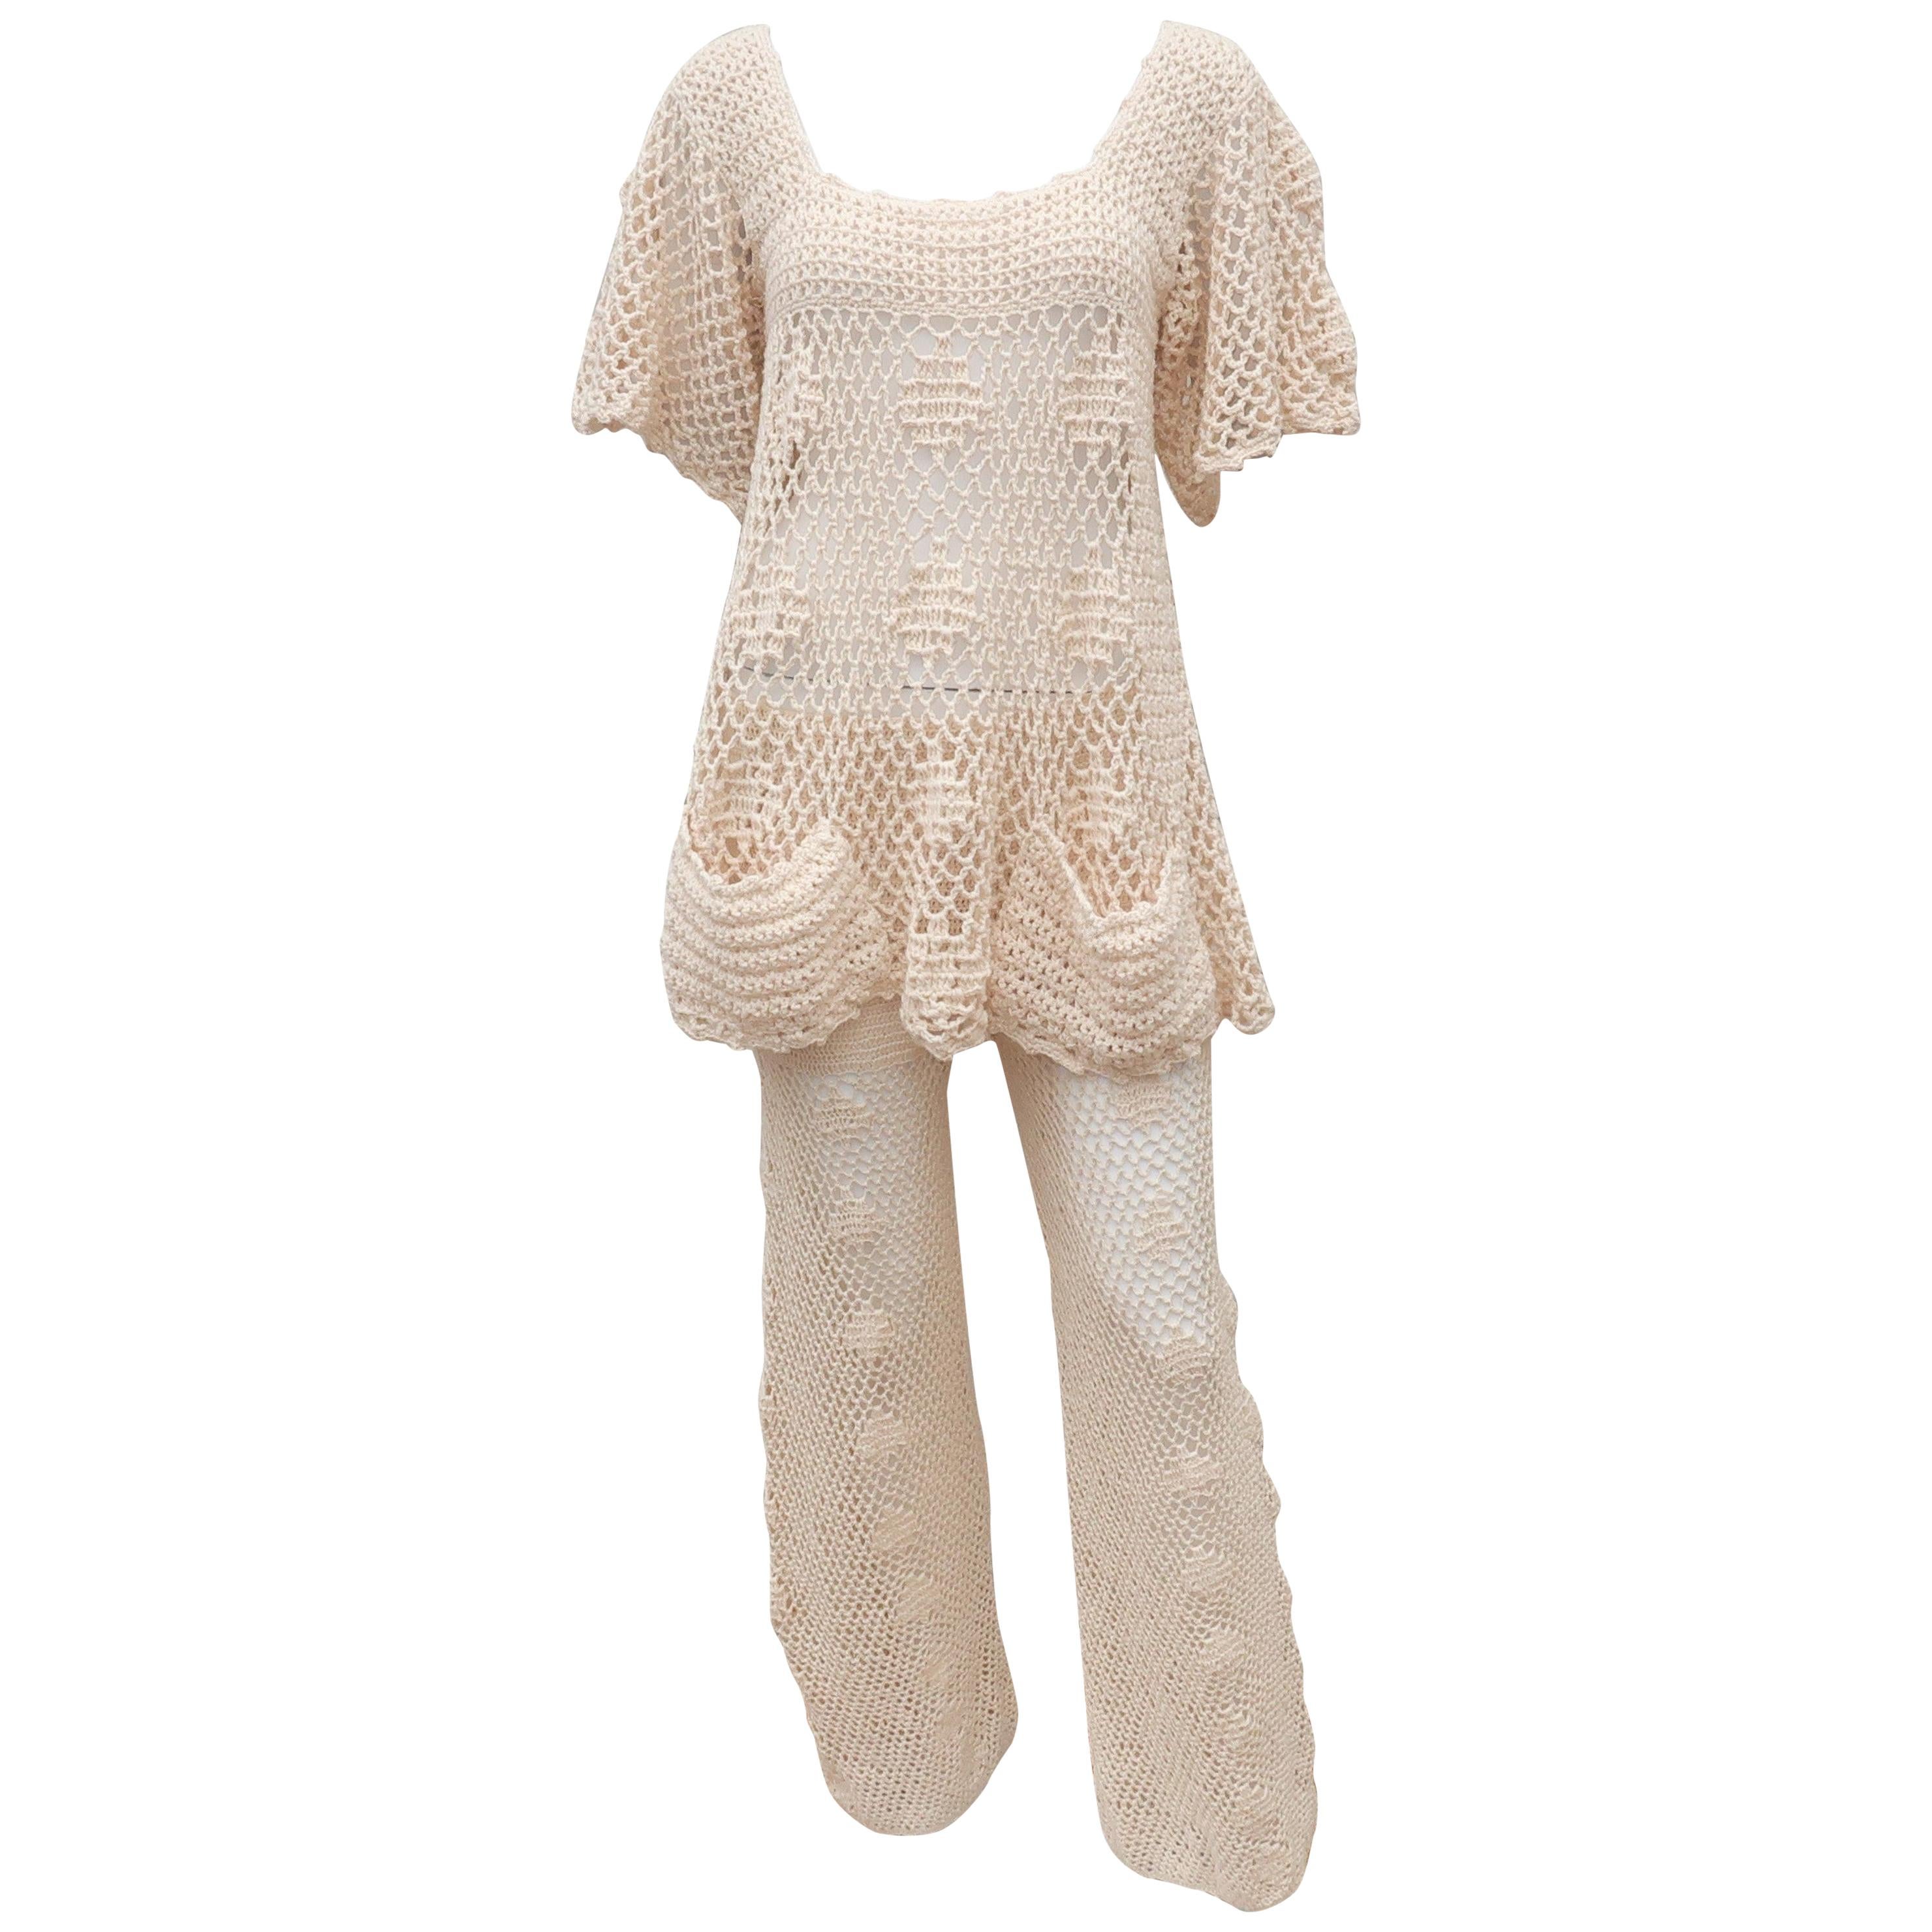 Greta Plattry Crochet Cotton Knit Pant Suit, 1960's